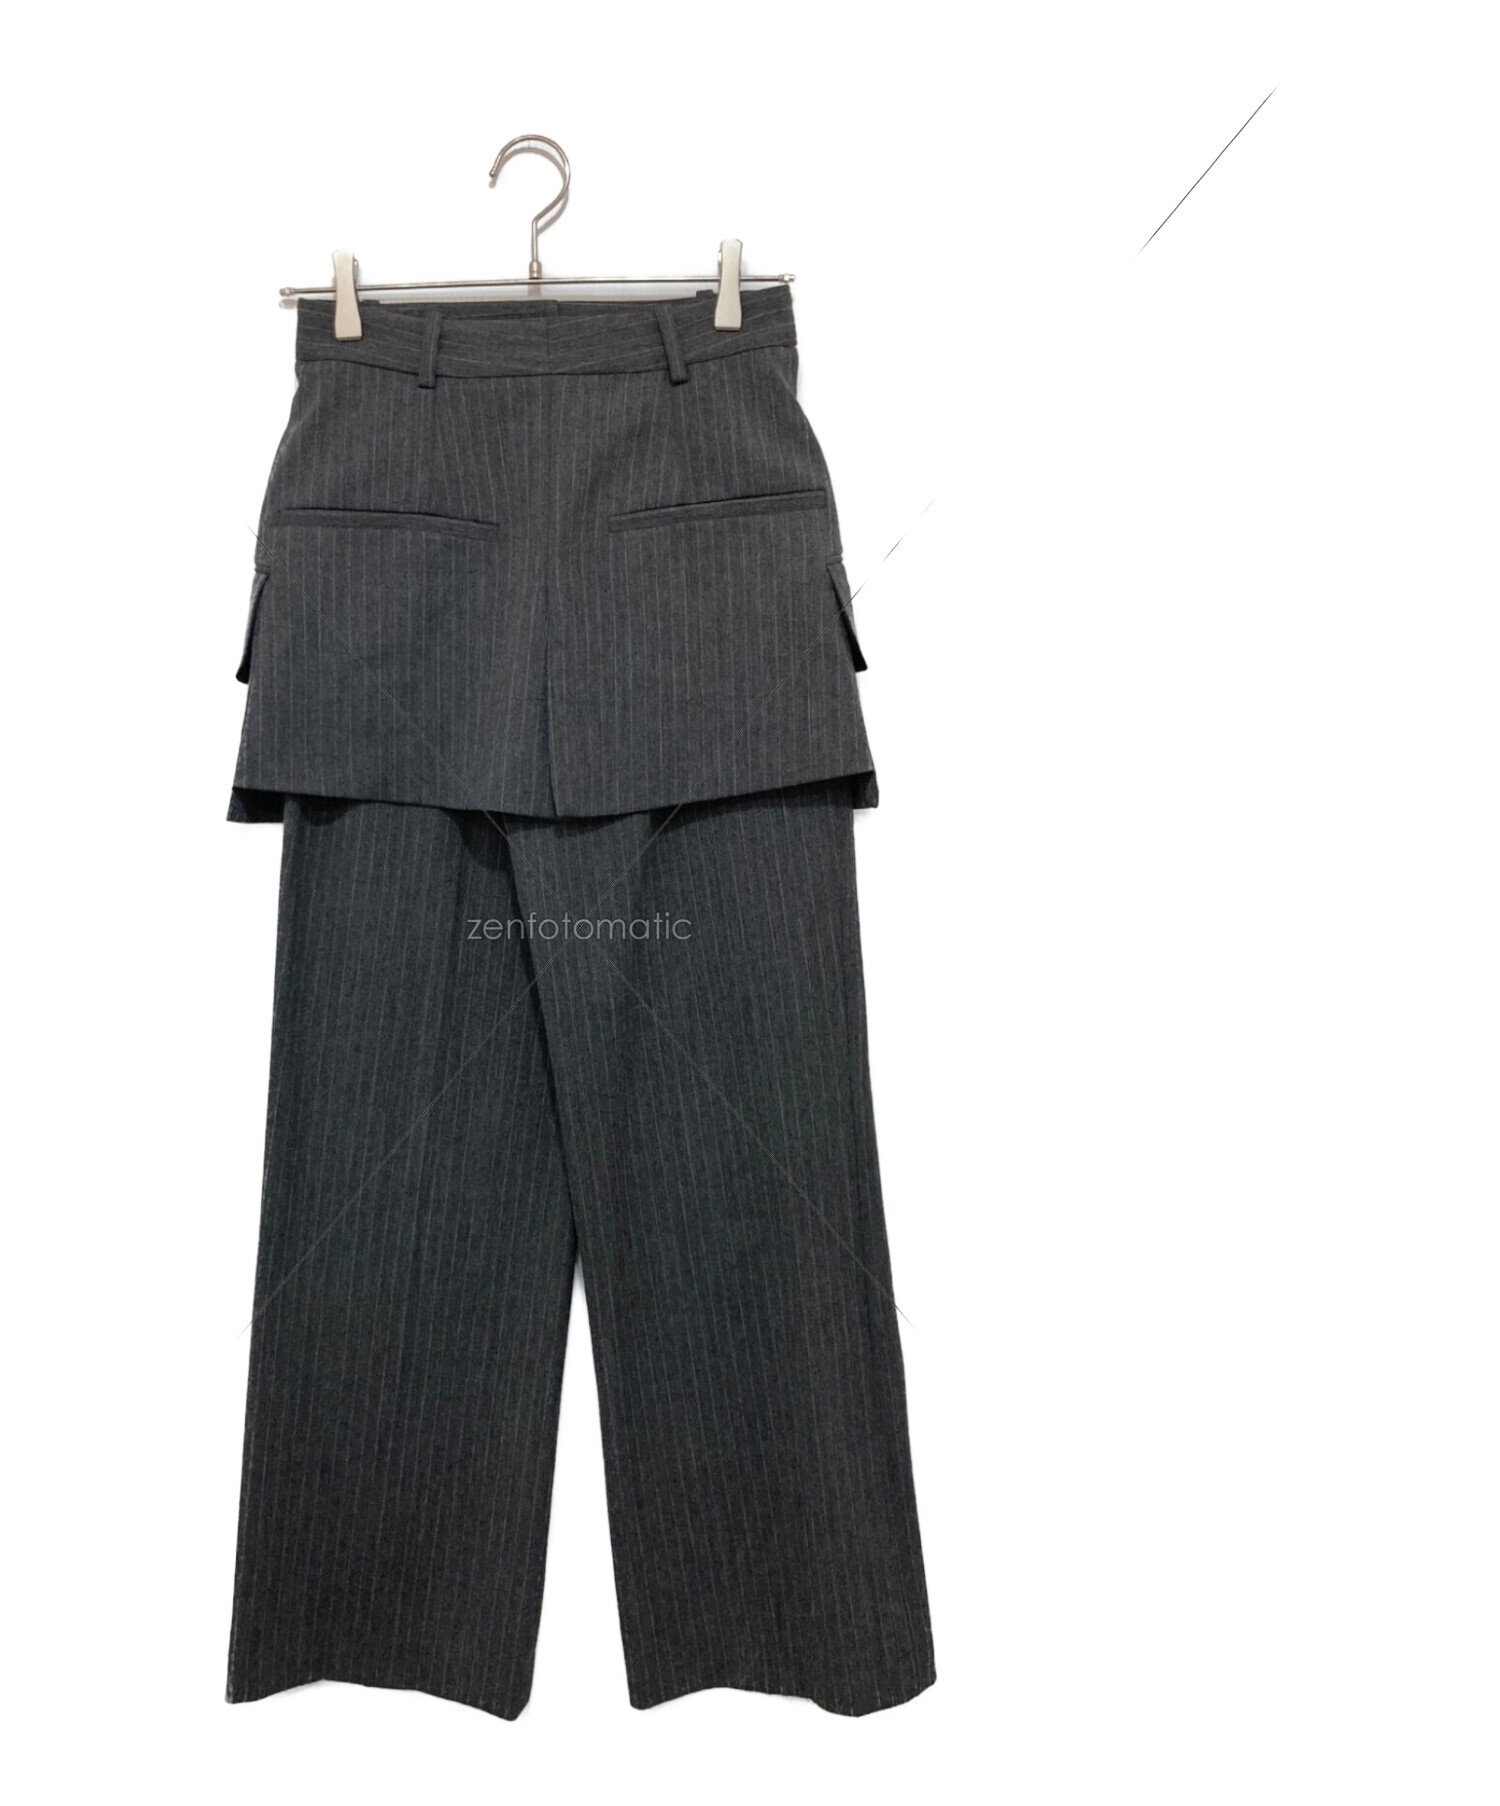 激安正規 ZARA MAISON SPECIAL XS S スカートオーバーパンツ パンツ 